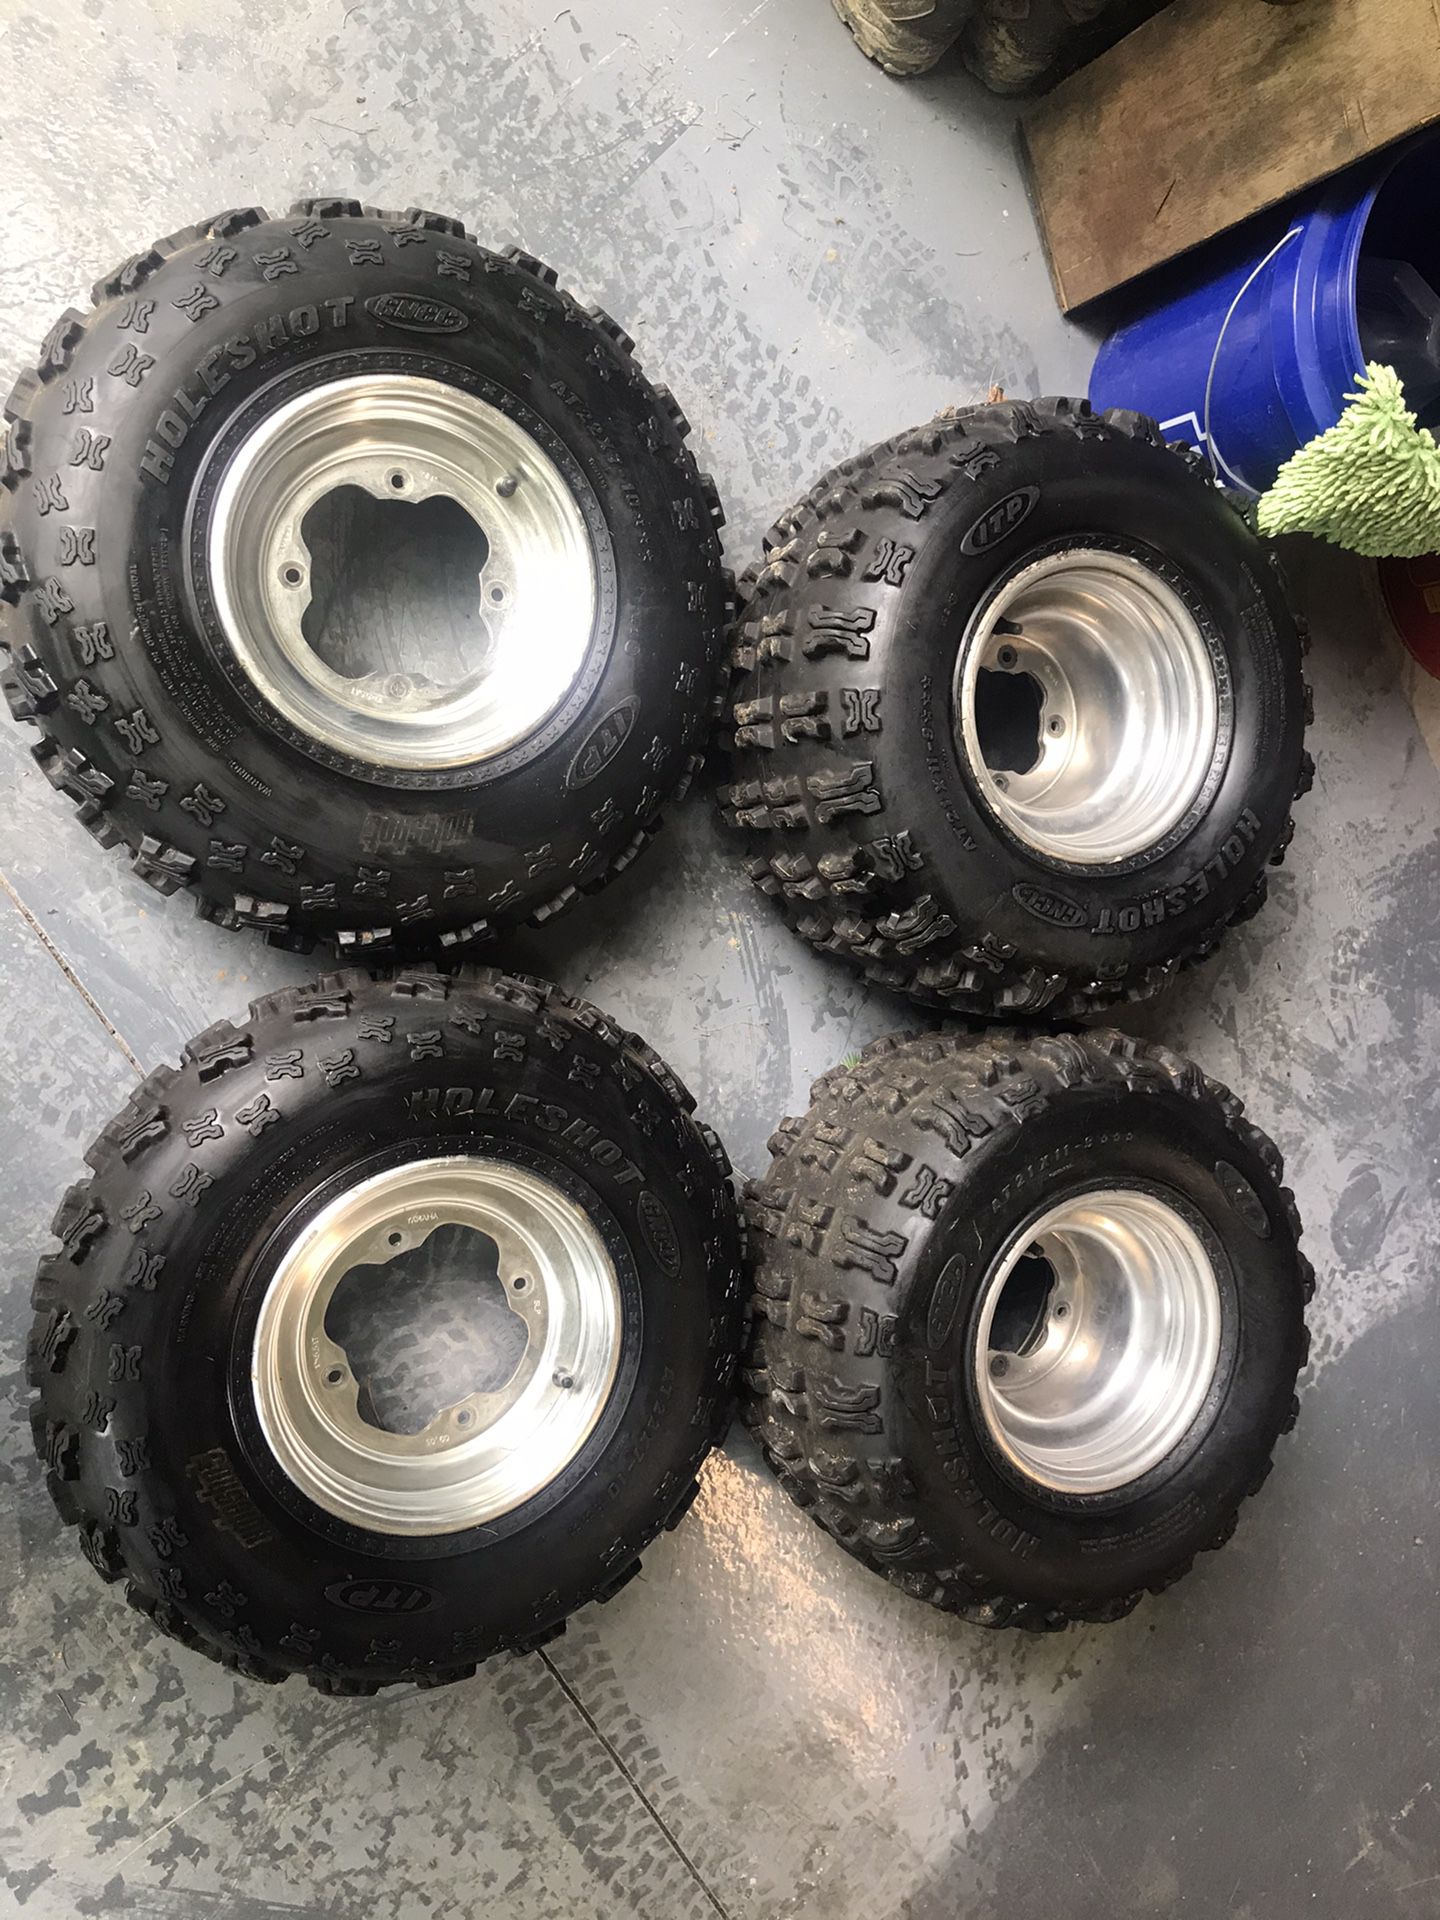 ITP Holeshot GNCC tires mounted on Yamaha rims